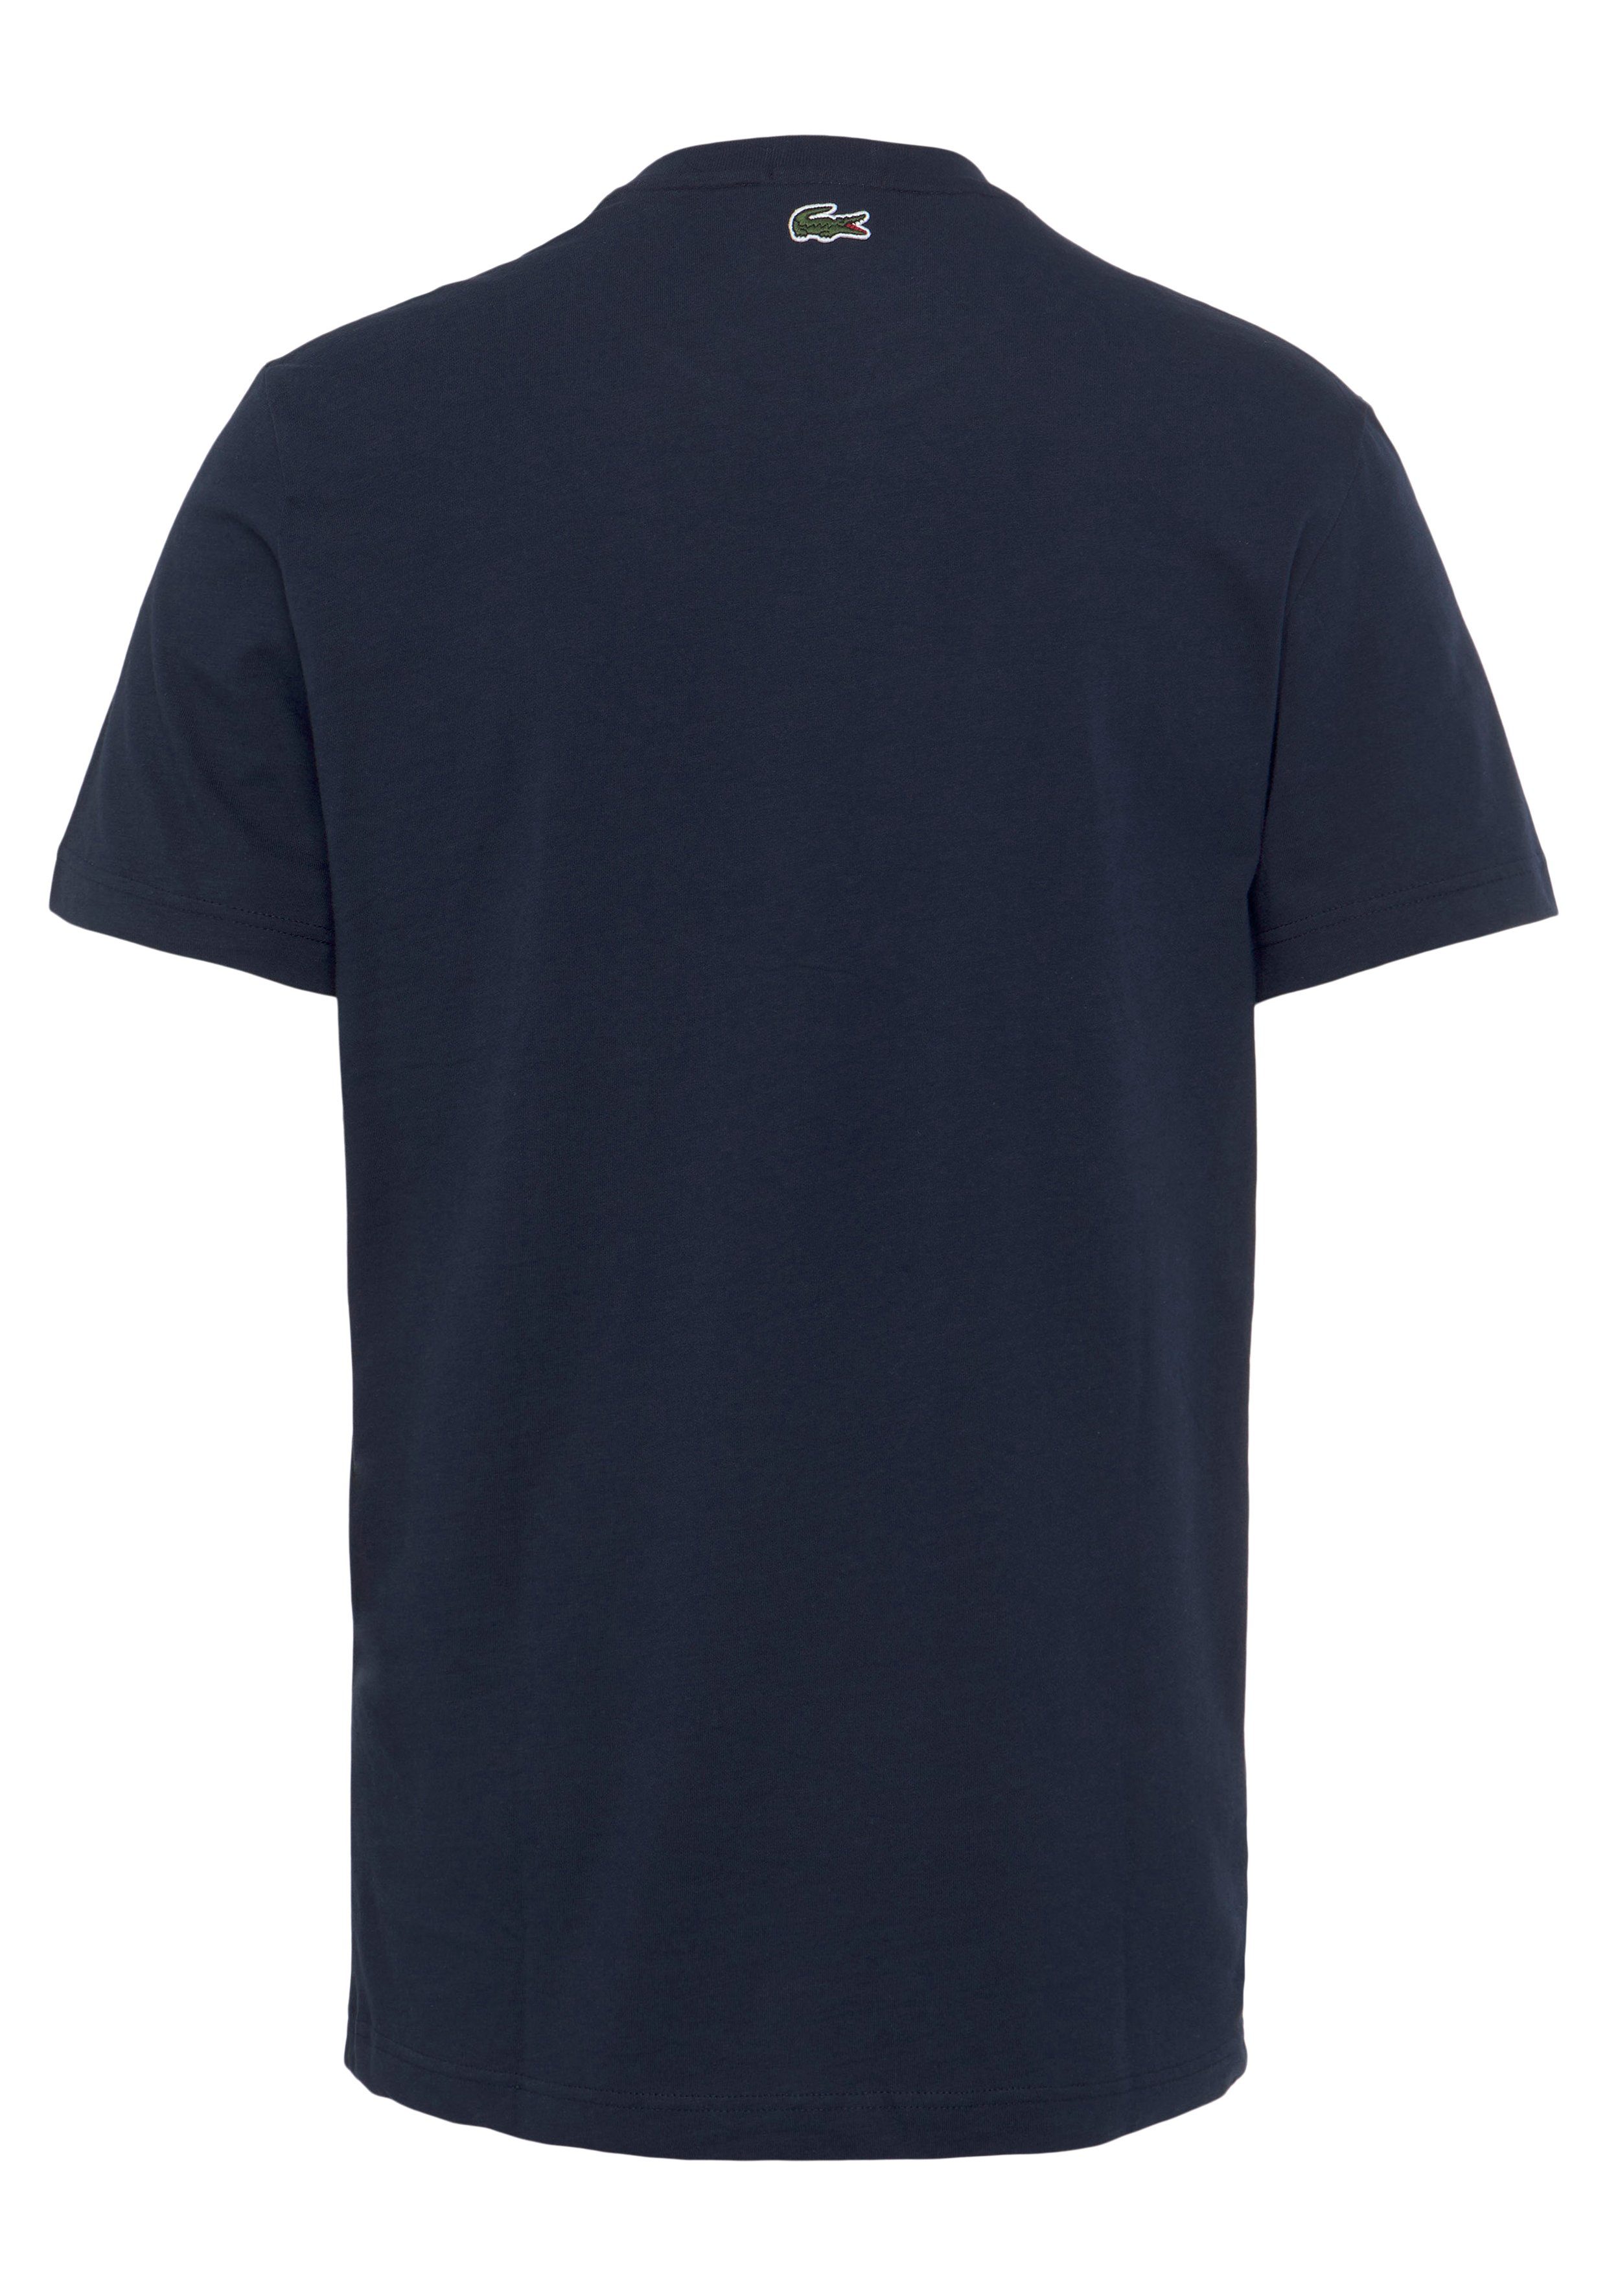 NAVY T-Shirt Brust auf Lacoste der Print T-SHIRT BLUE Lacoste mit